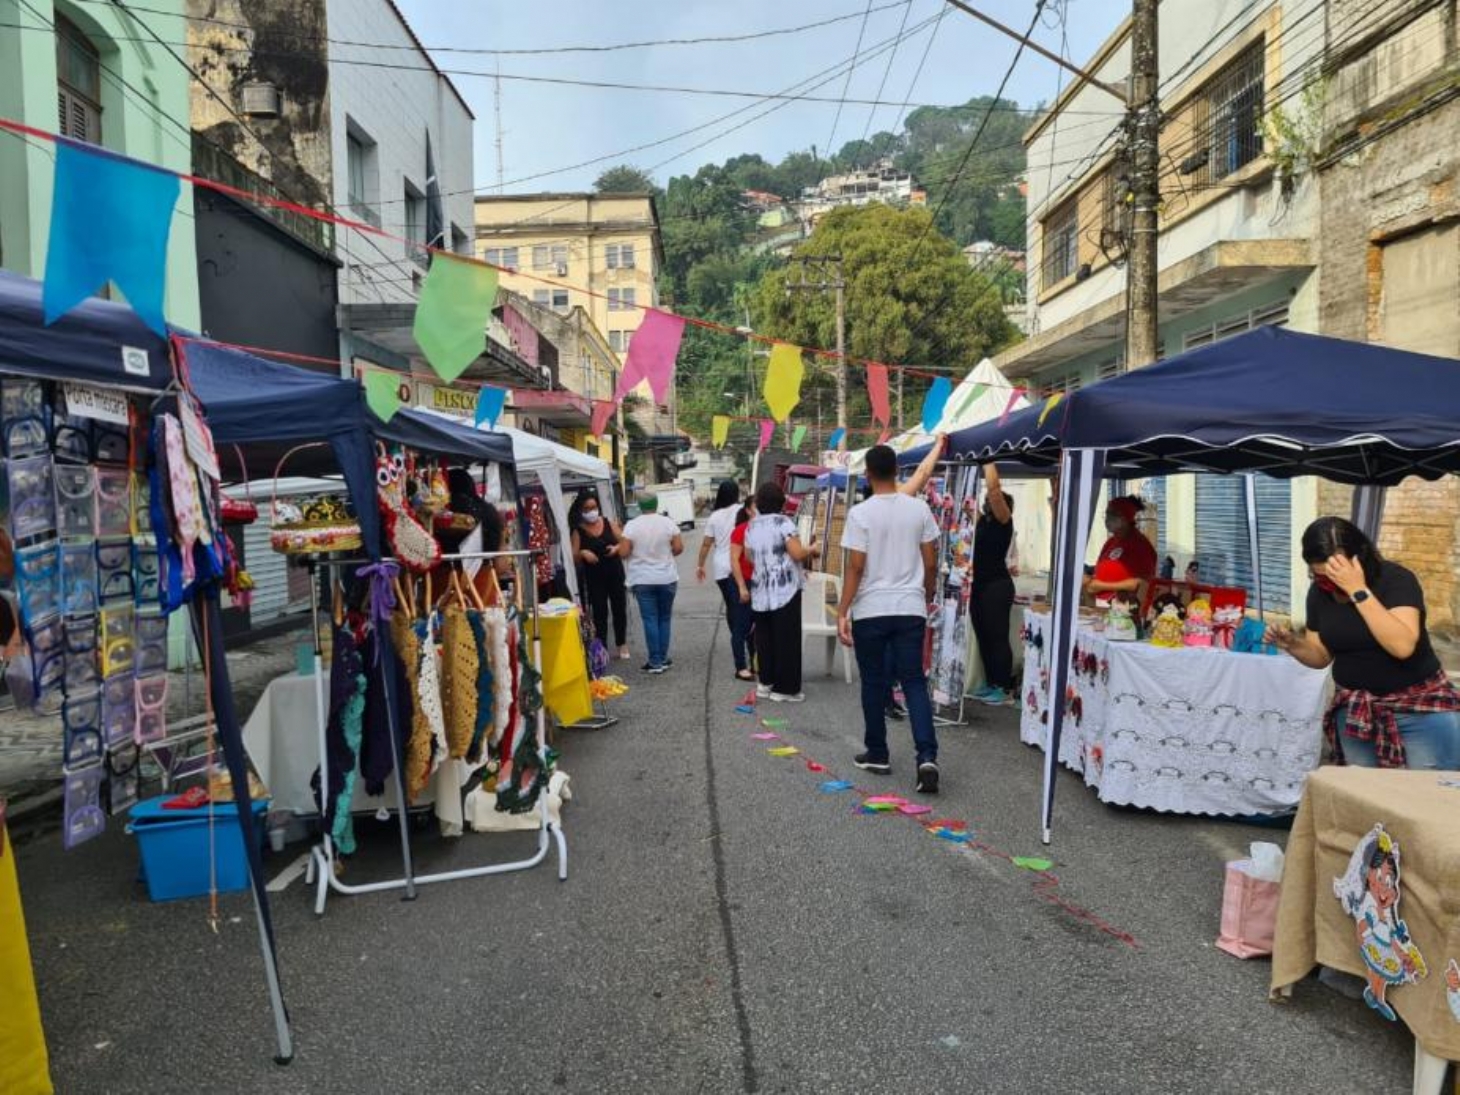 Feira Livre Criativa em Santos entra em clima de festa junina | Jornal da Orla